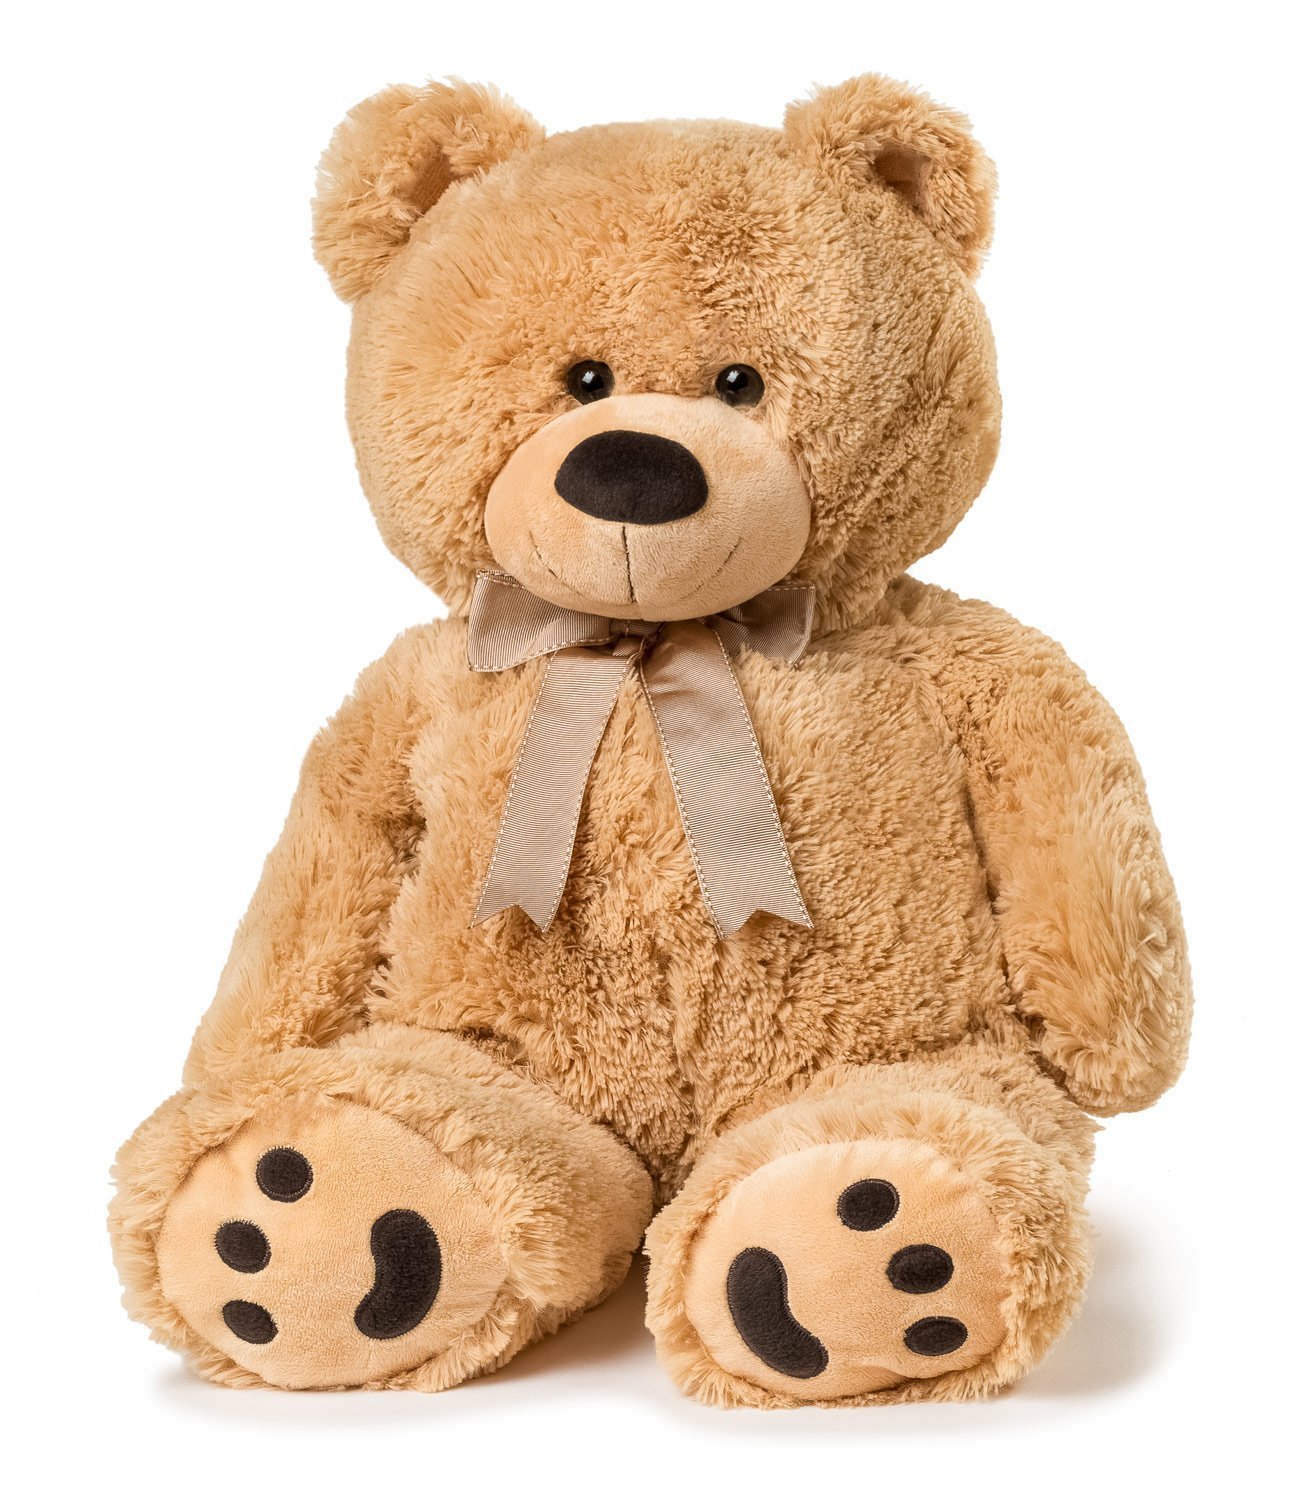 Big Plush Teddy Bear cute lovely fluffy stuffed giant 